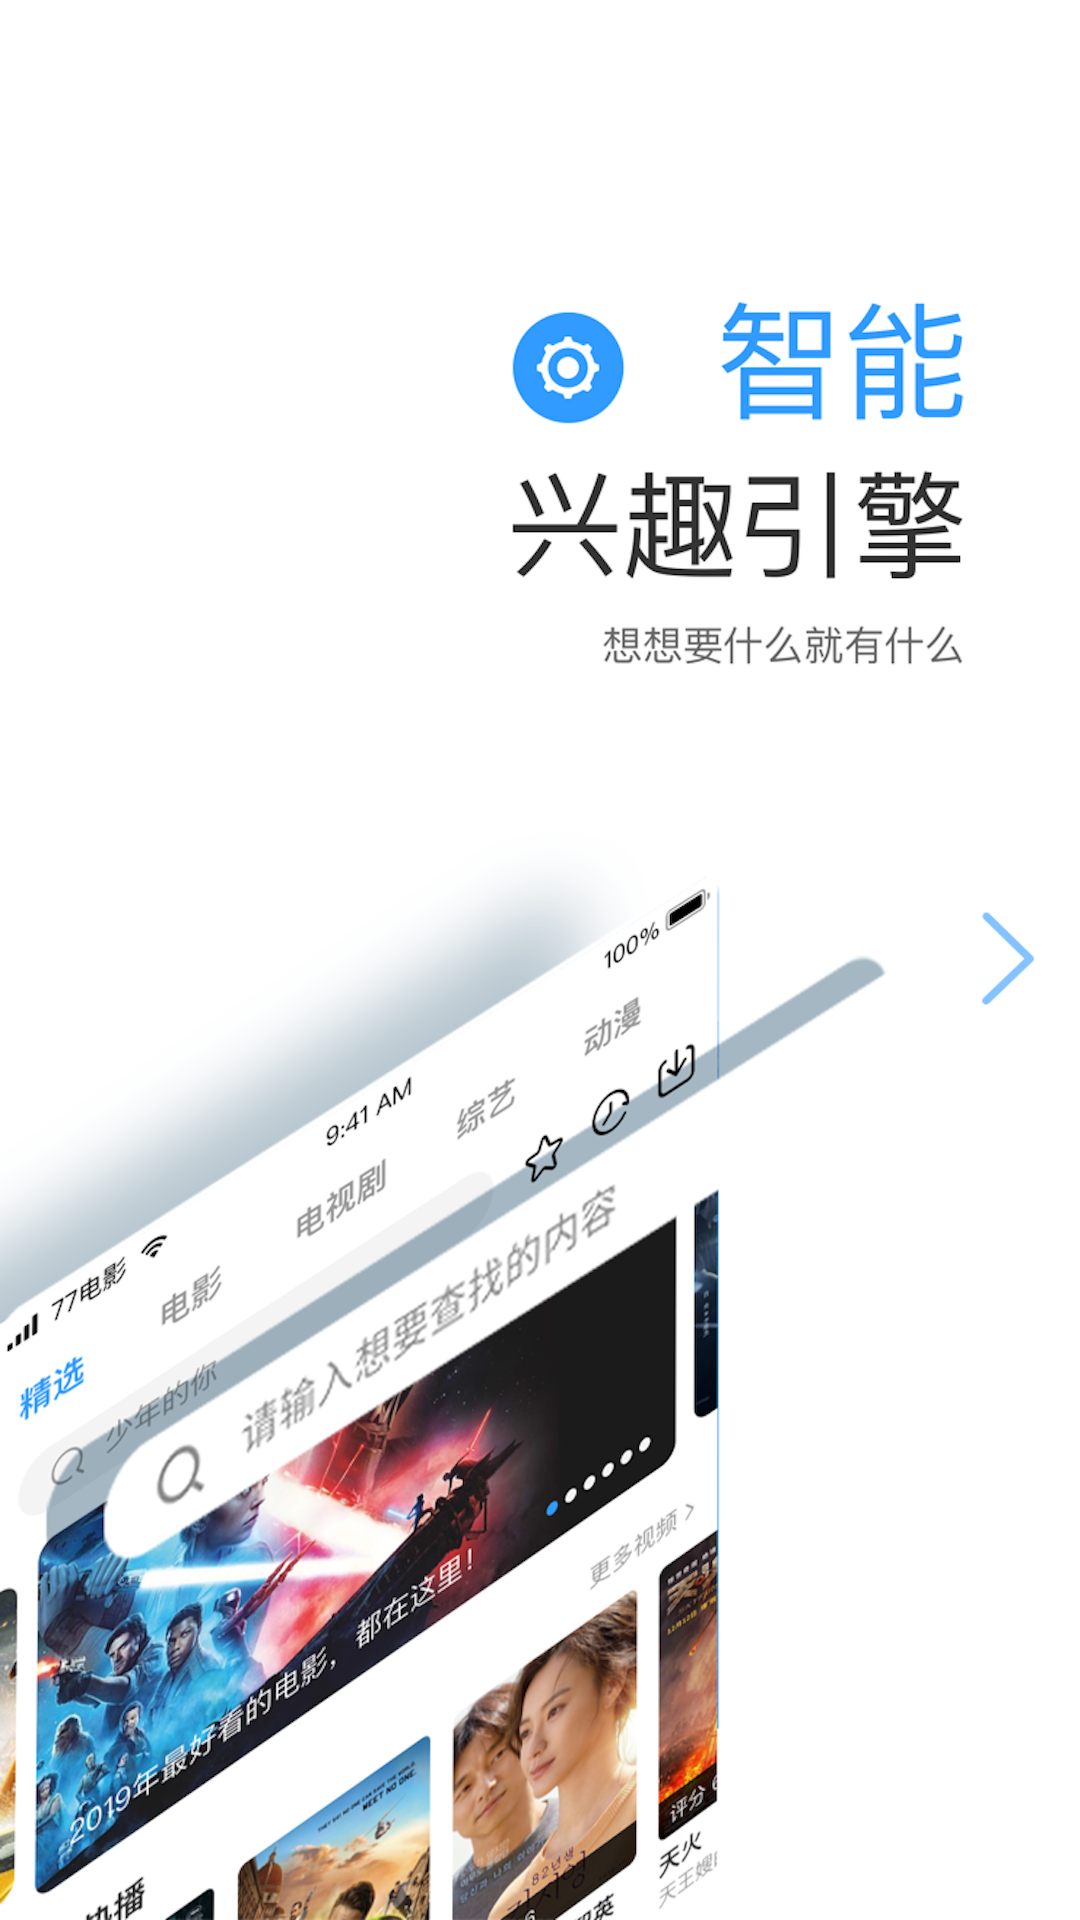 七七影视大全追剧appv1.9.3最新安卓版